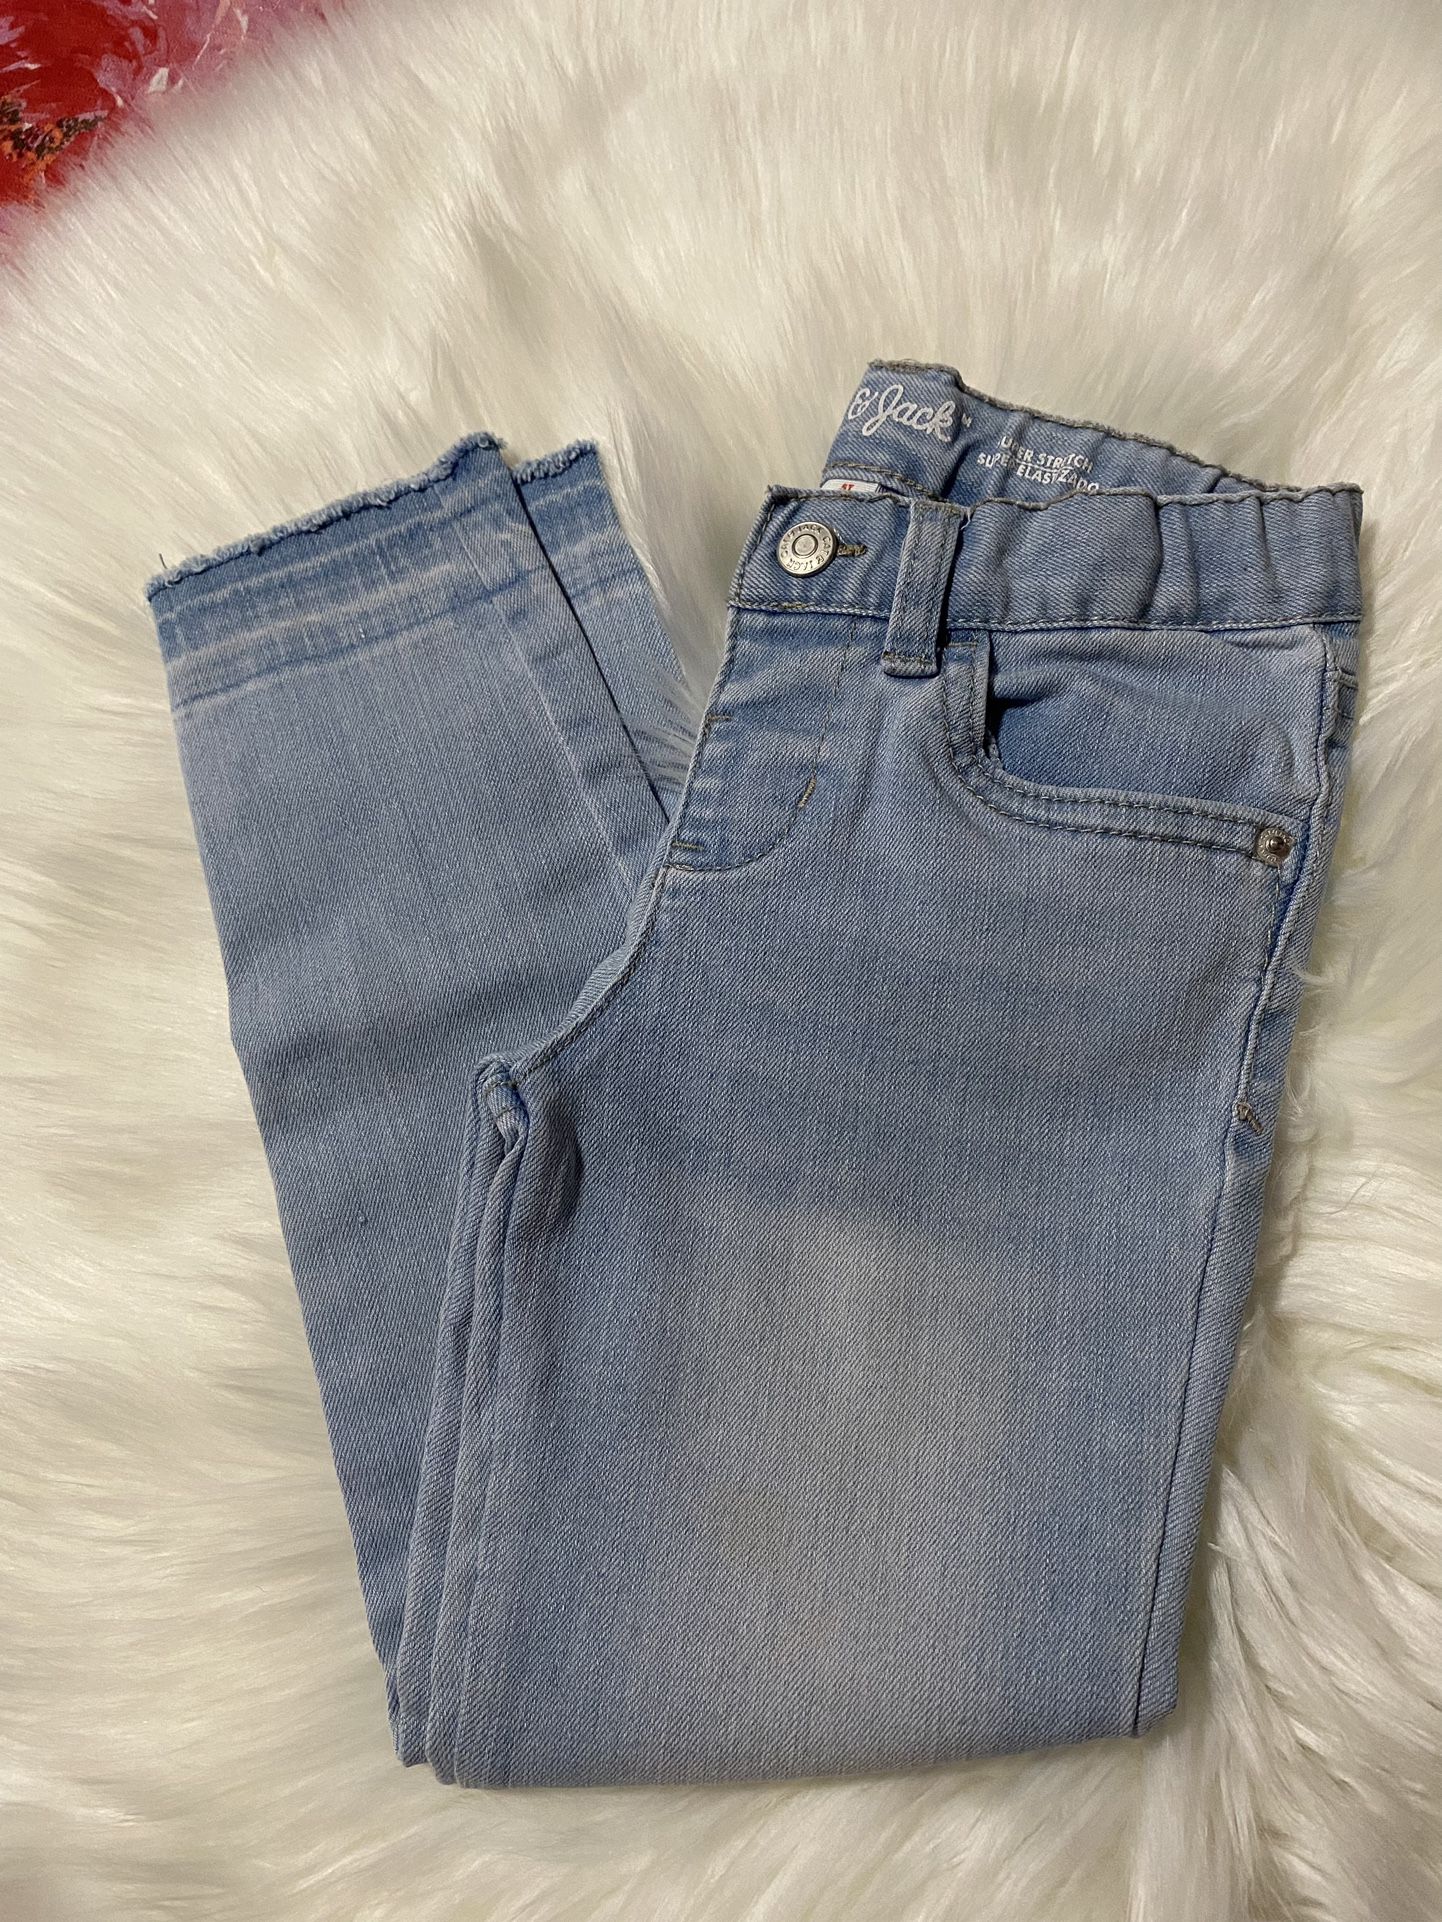 Toddler Girl Denim Jeans 5T